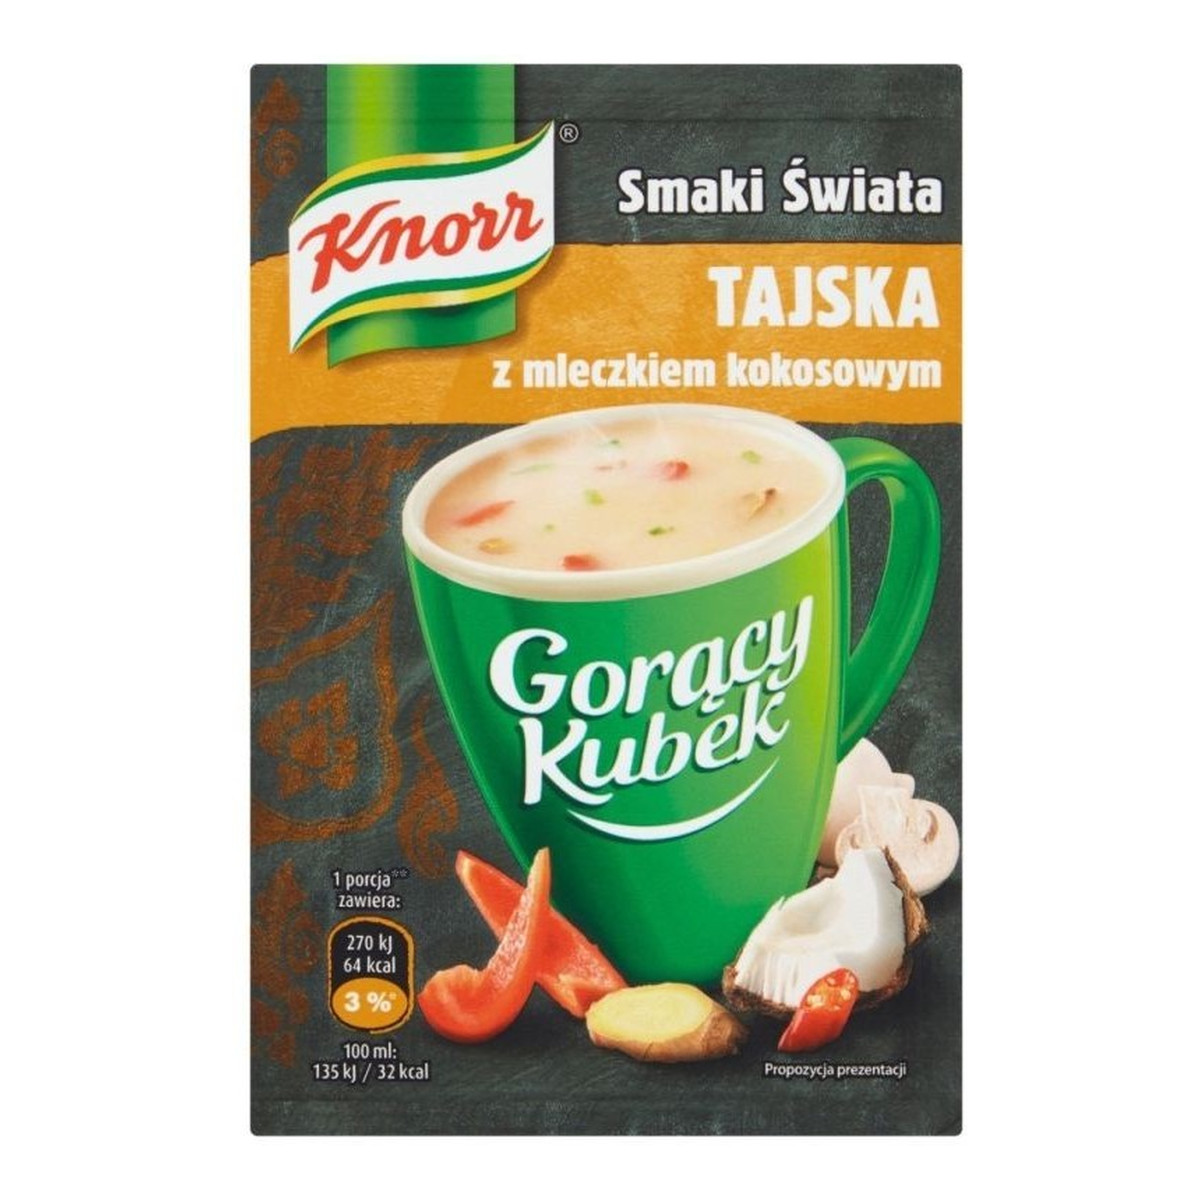 Knorr Gorący Kubek Smaki Świata Tajska z mleczkiem kokosowym 15g